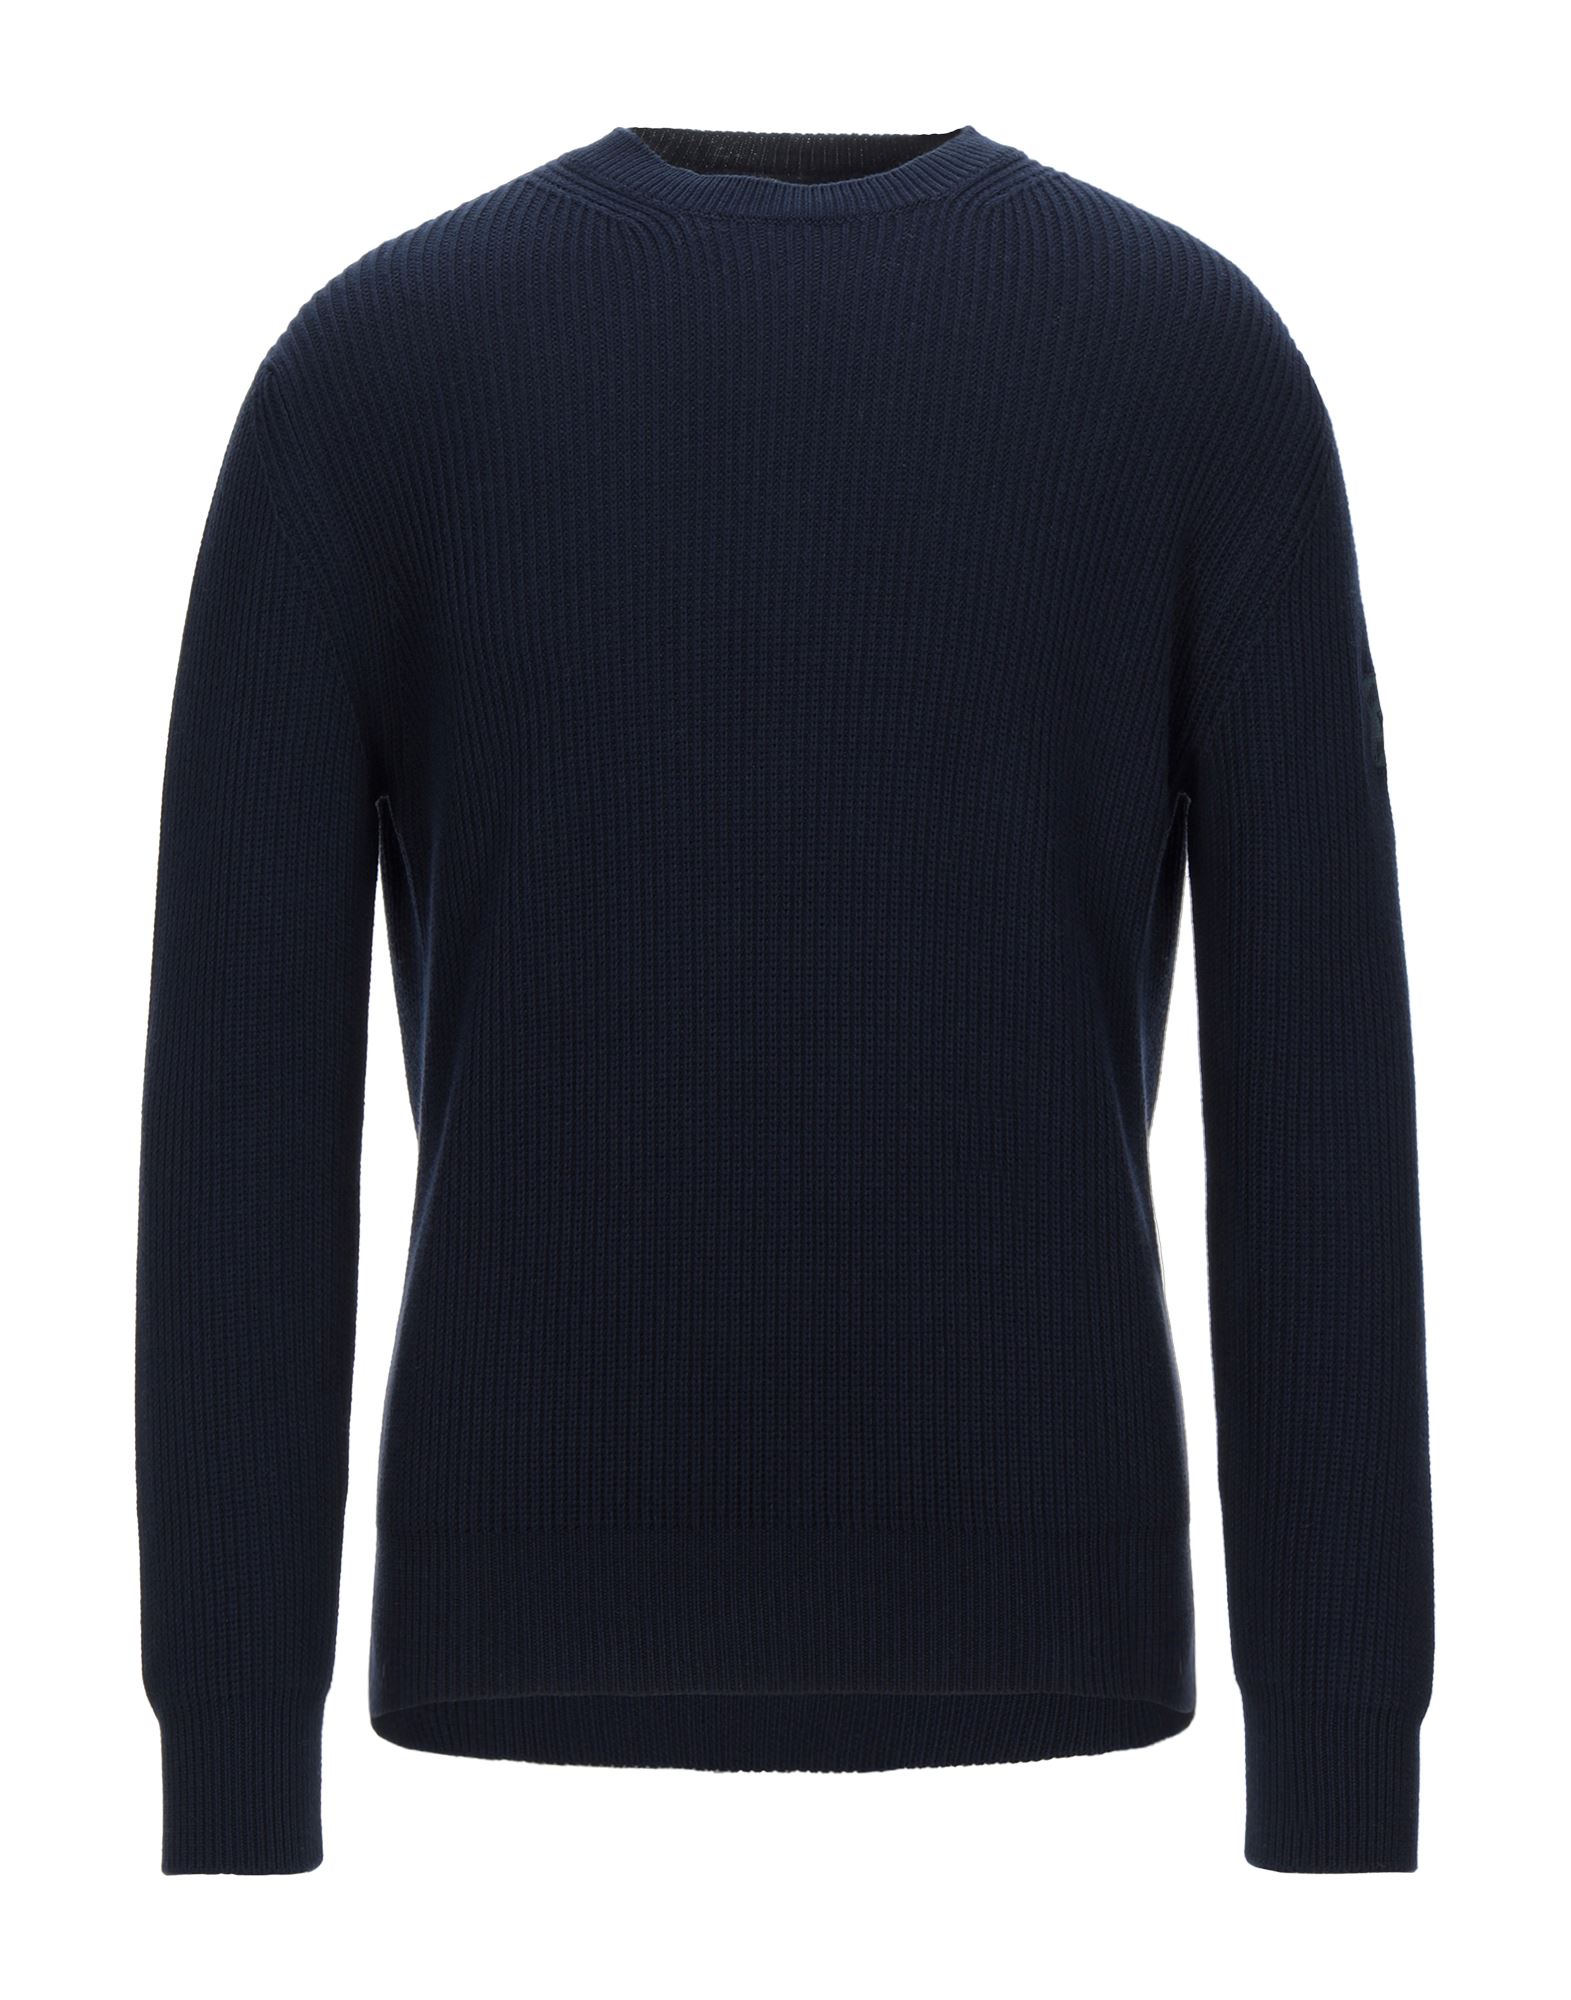 PAUL & SHARK Sweaters - Item 14102557